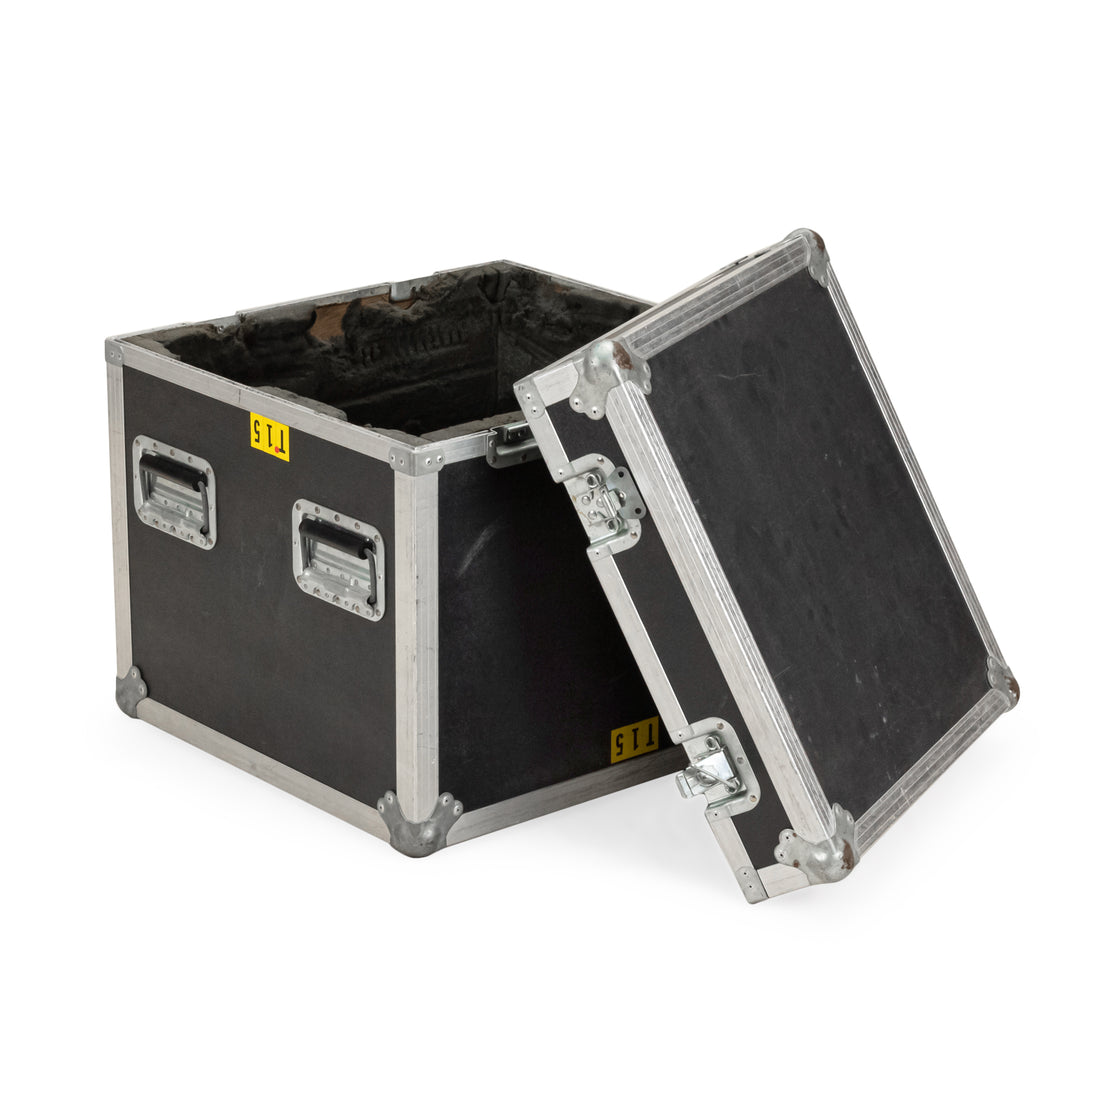 Vinyl Clad Plywood & Aluminum Equipment Box